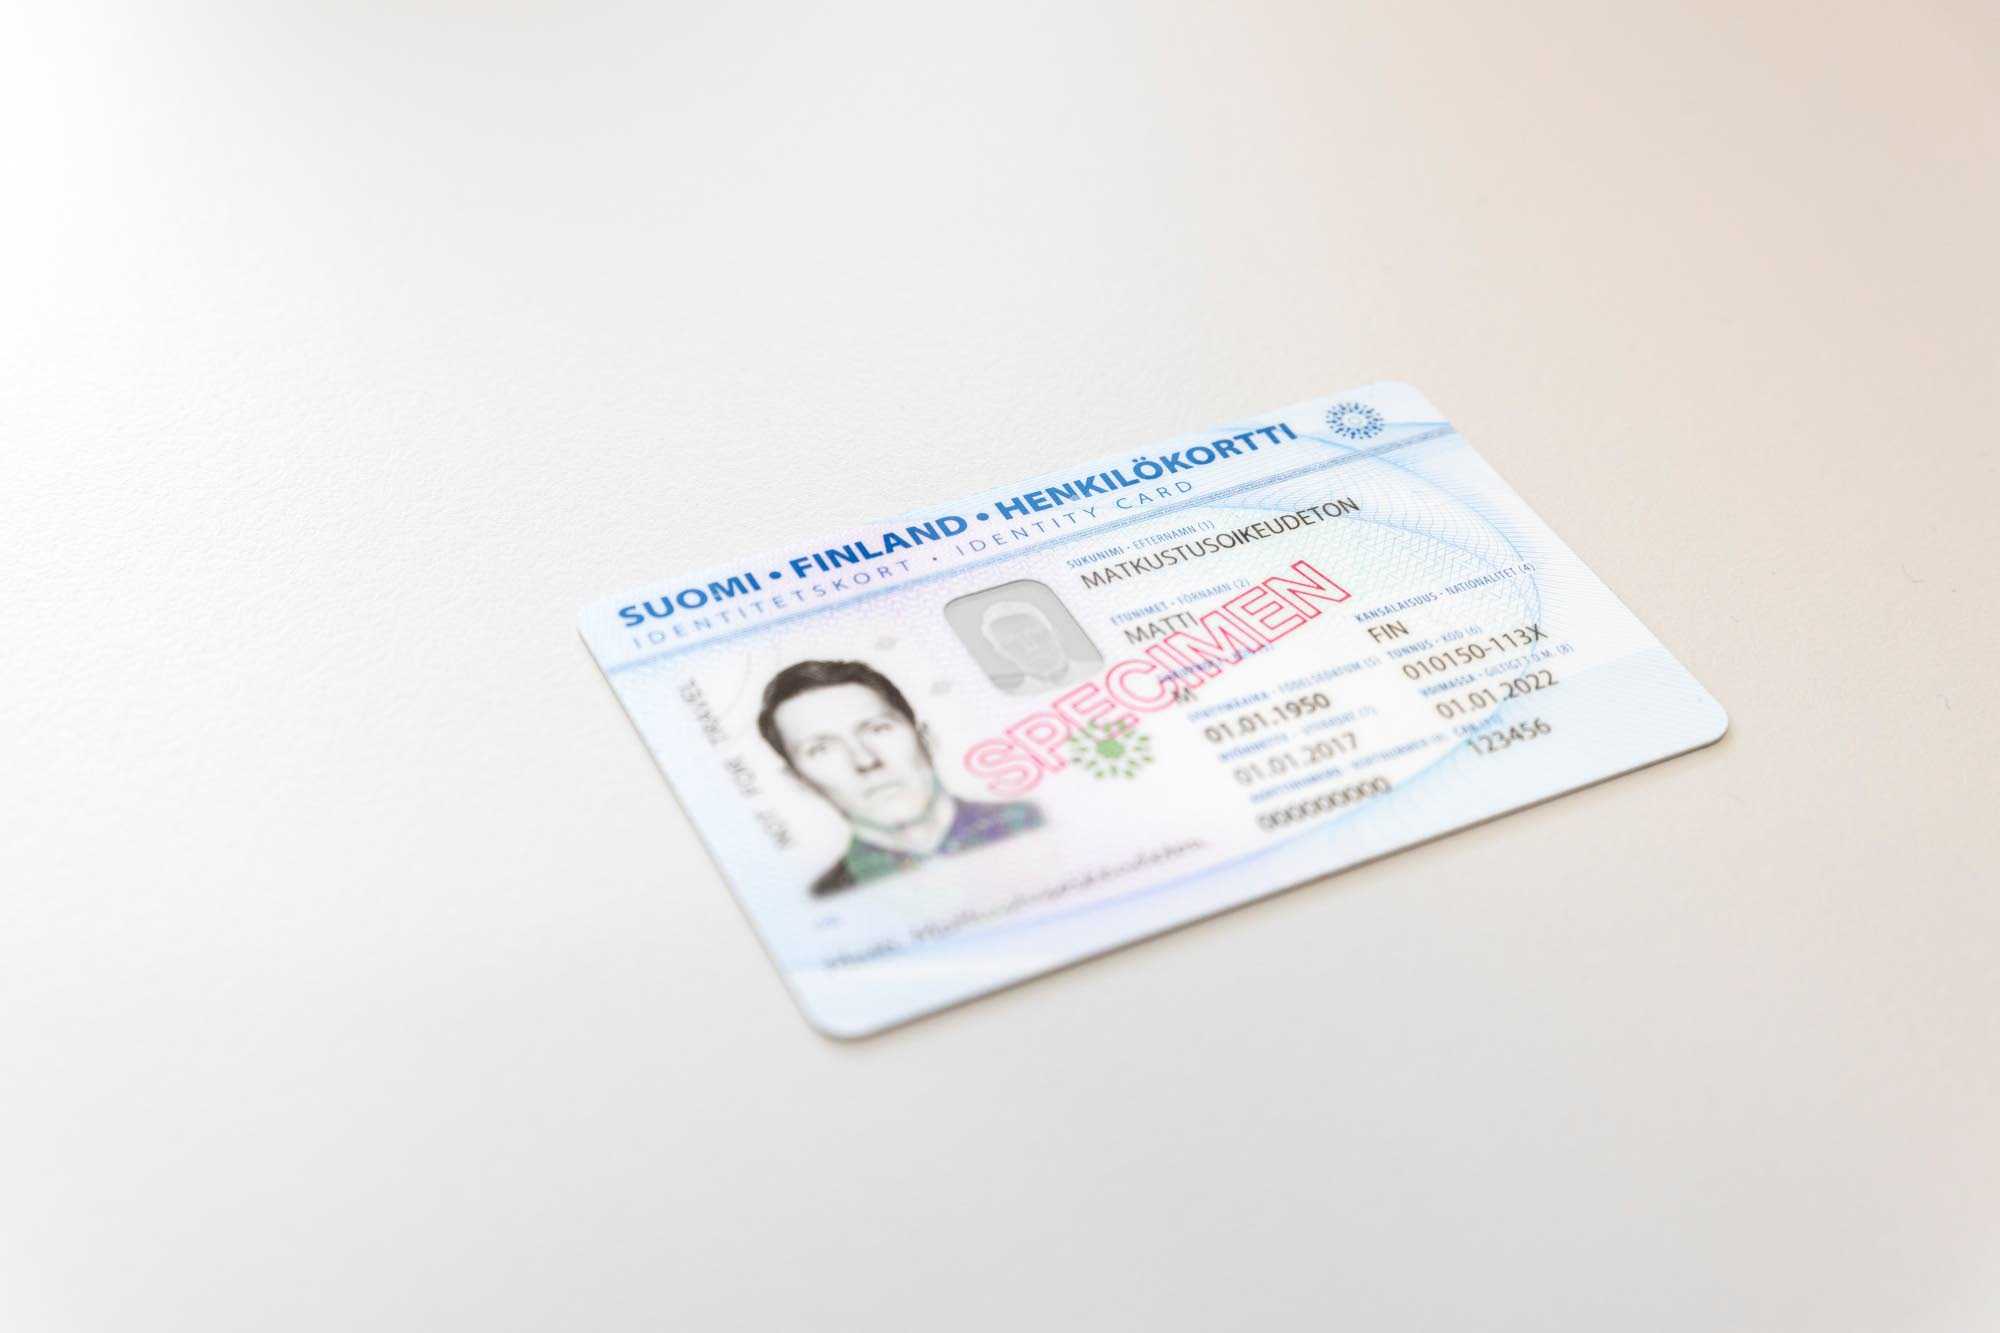 Bild av ett finskt identitetskort. På identitetskortets framsida står det specimen.